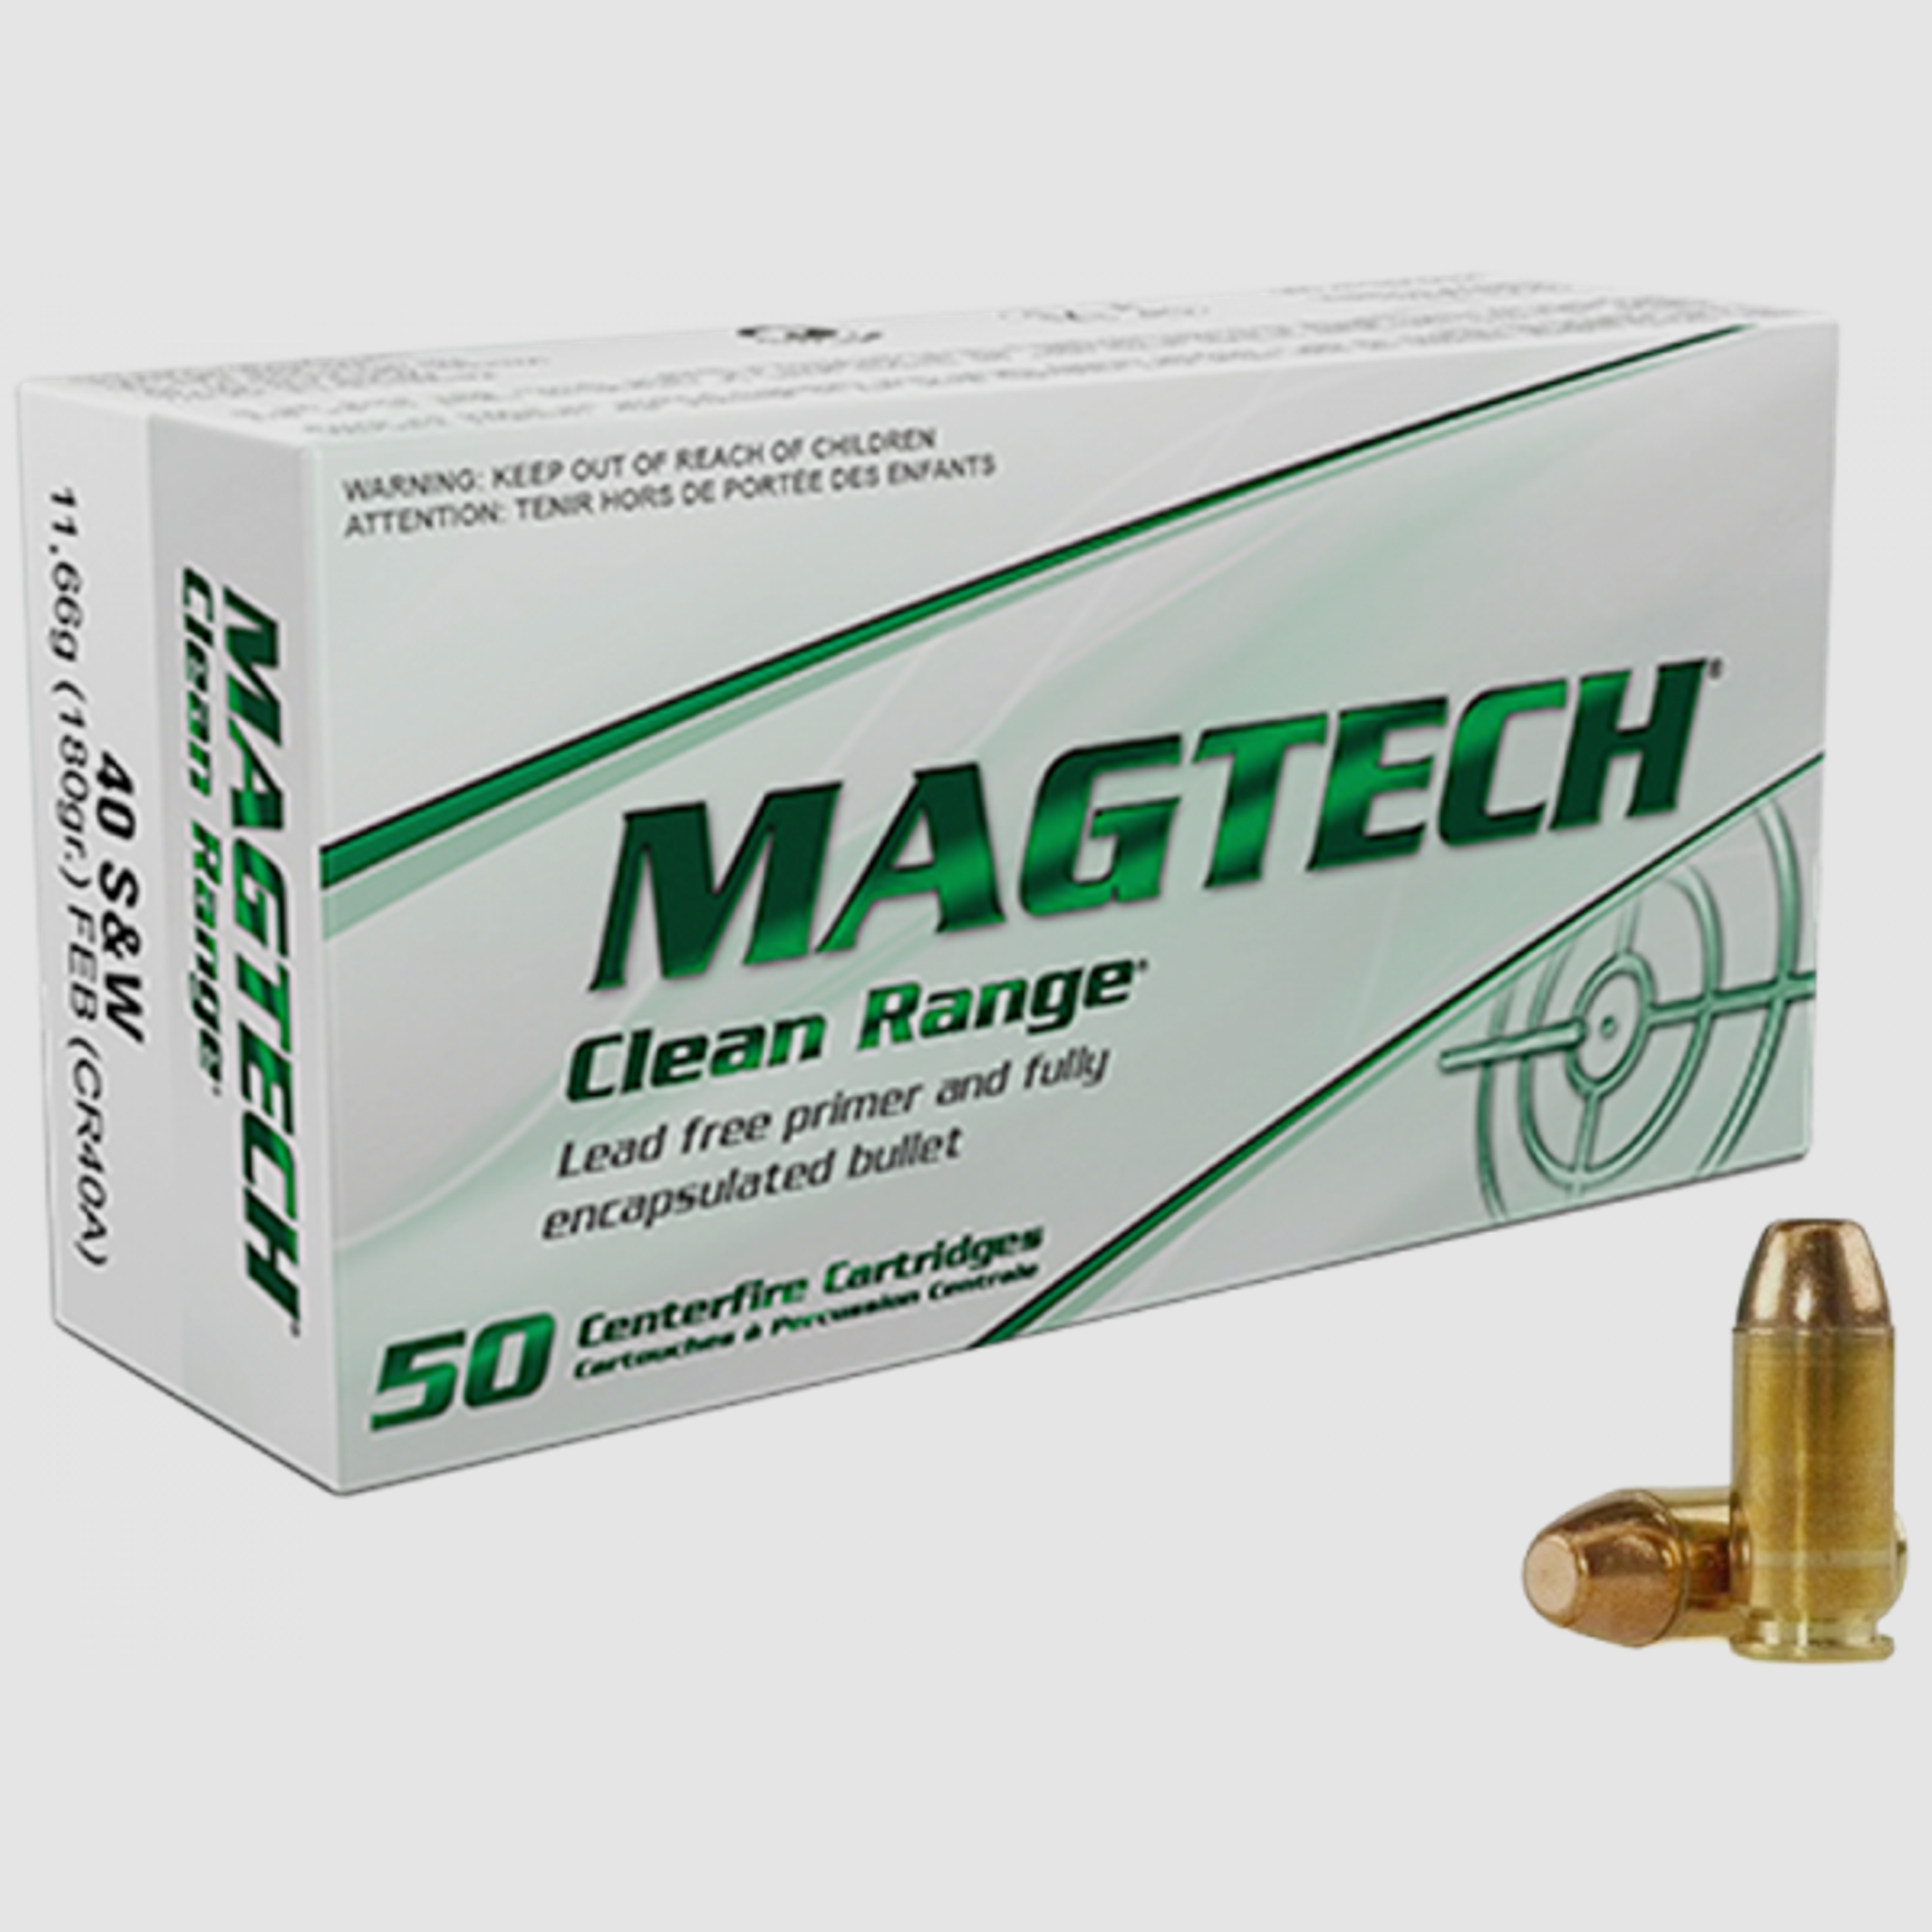 Magtech Clean Range .40 S&W Magtech FEB Flat 180 grs Pistolenpatronen